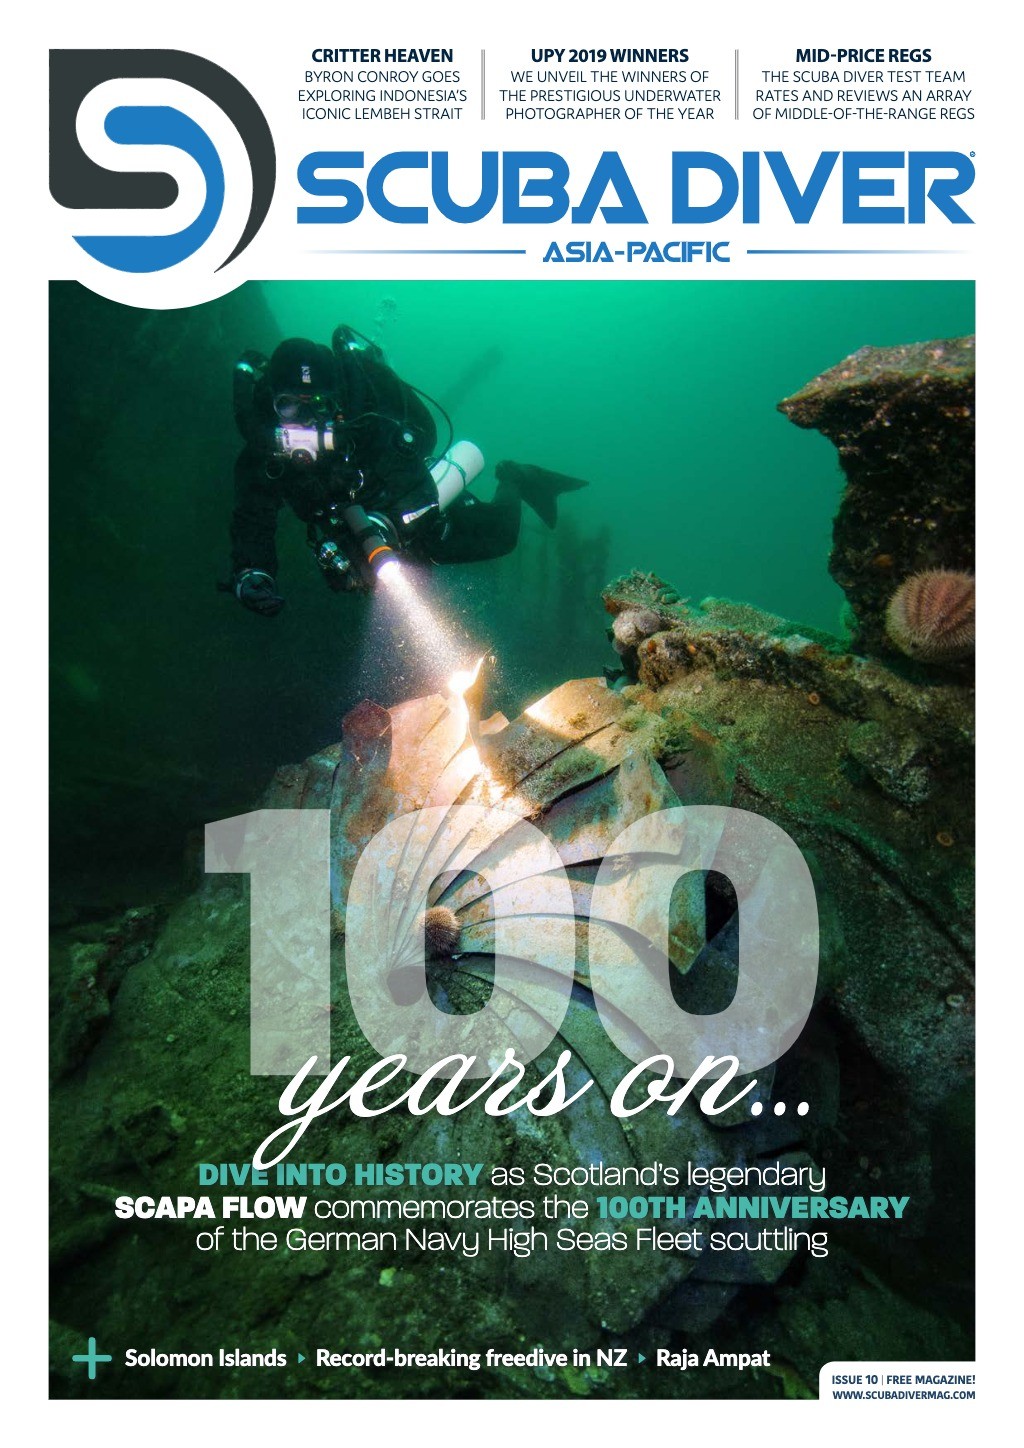 Scuba Diver Asia-Pacific - Issue 10